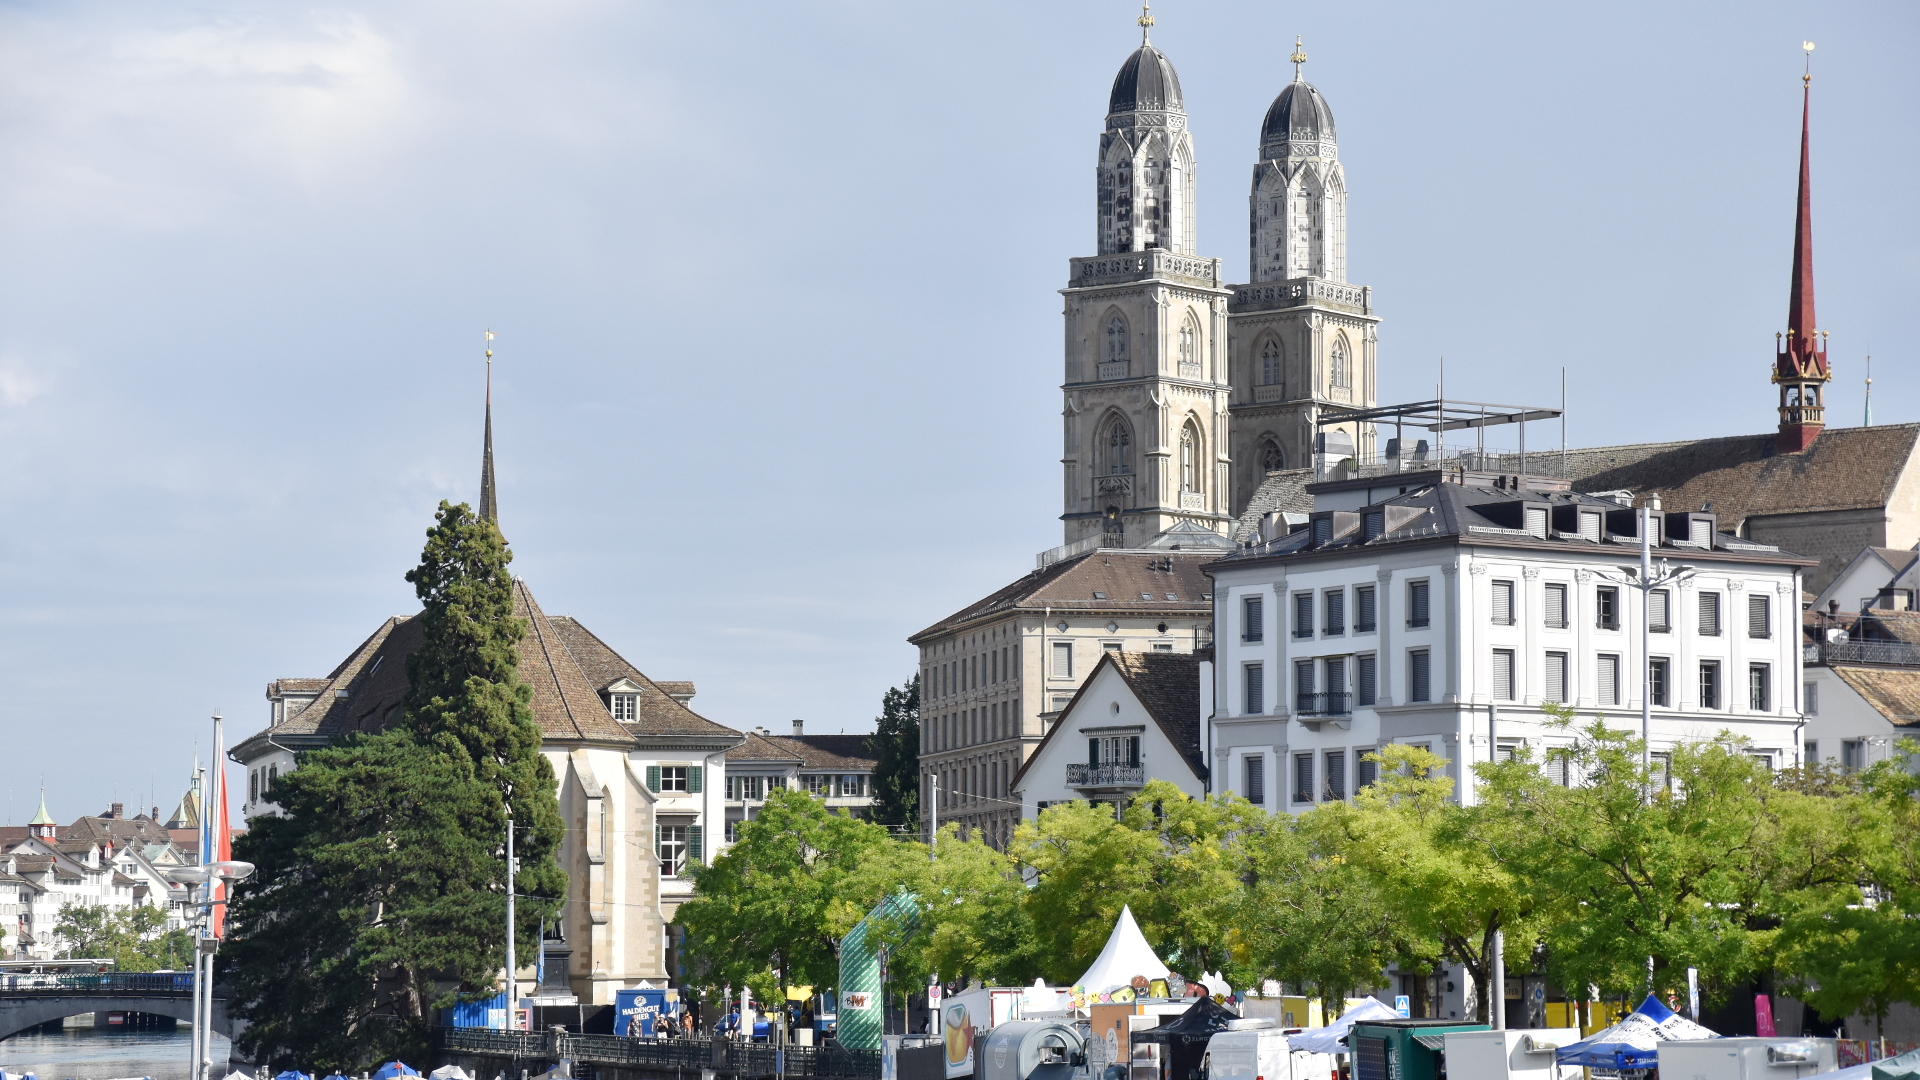 Blick auf Türme des Grossmünsters und der Wasserkirche in Zürich, versteckt hinter Bäumen an der Limmat.